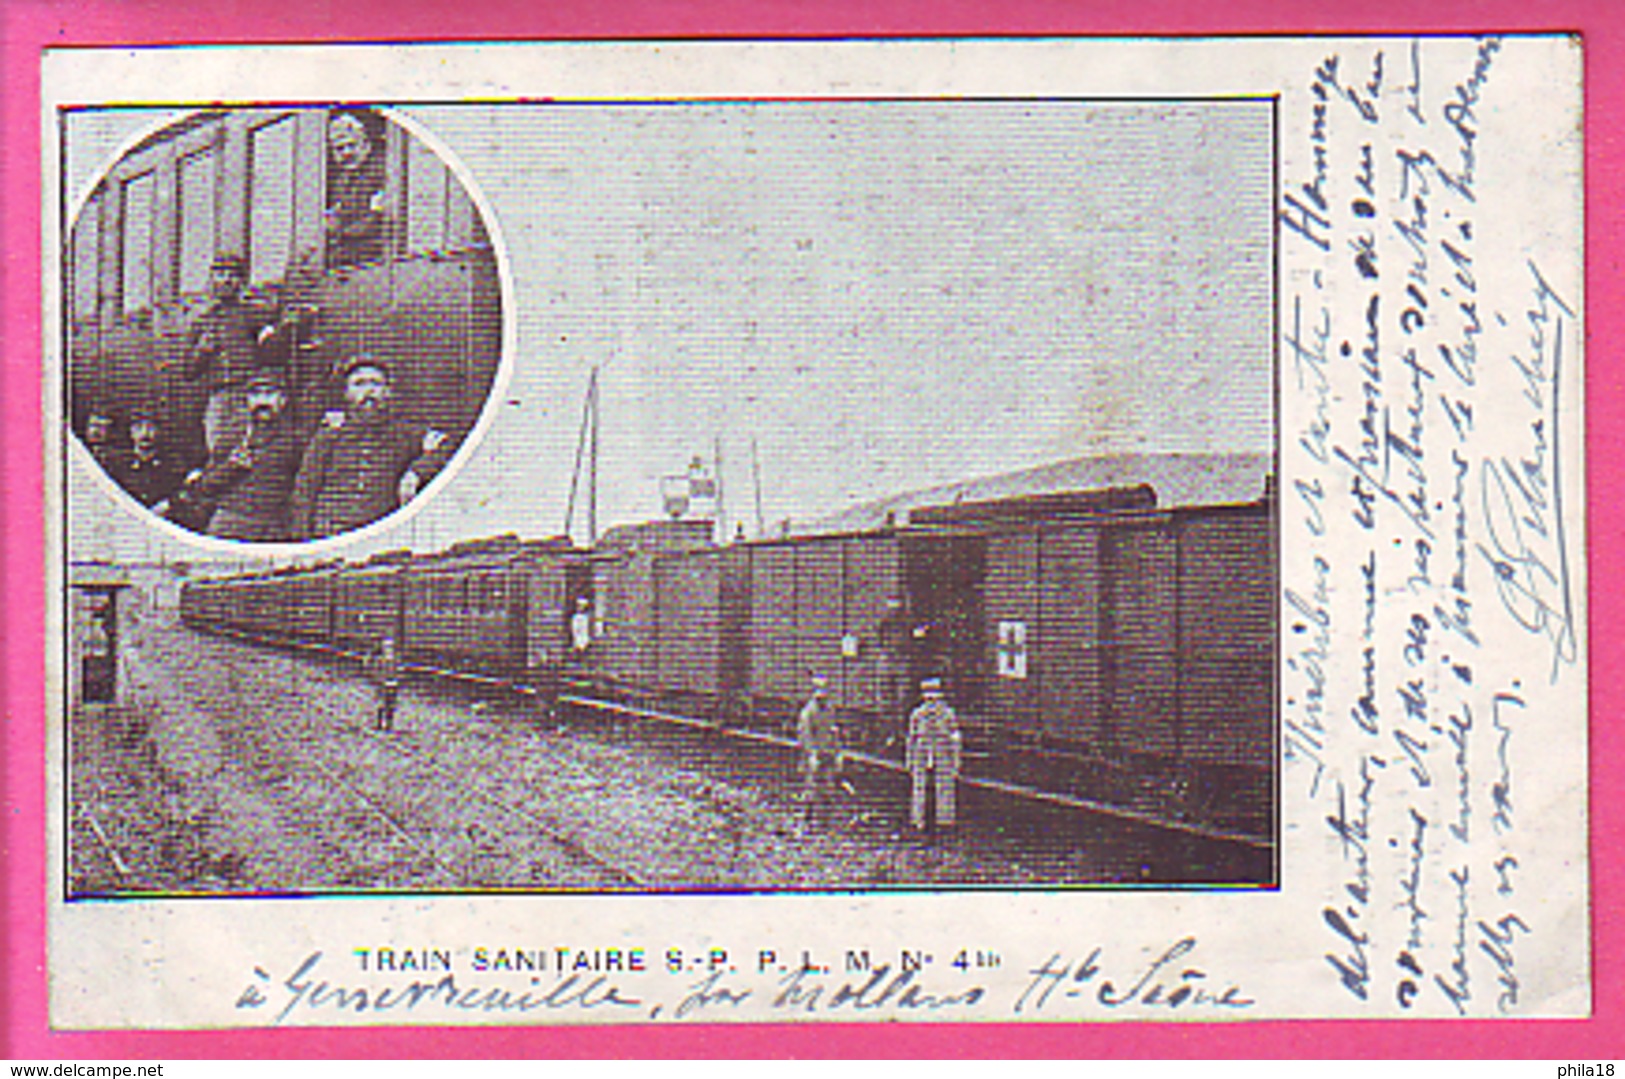 MLITARIA SANTE CROIX ROUGE SNCF CHANSON SUR LAIR PAIMPOLAISE TRAIN SANITAIRE S P P L M N° 4 BIS A GENEVREUILLE HT SAONE - War 1914-18